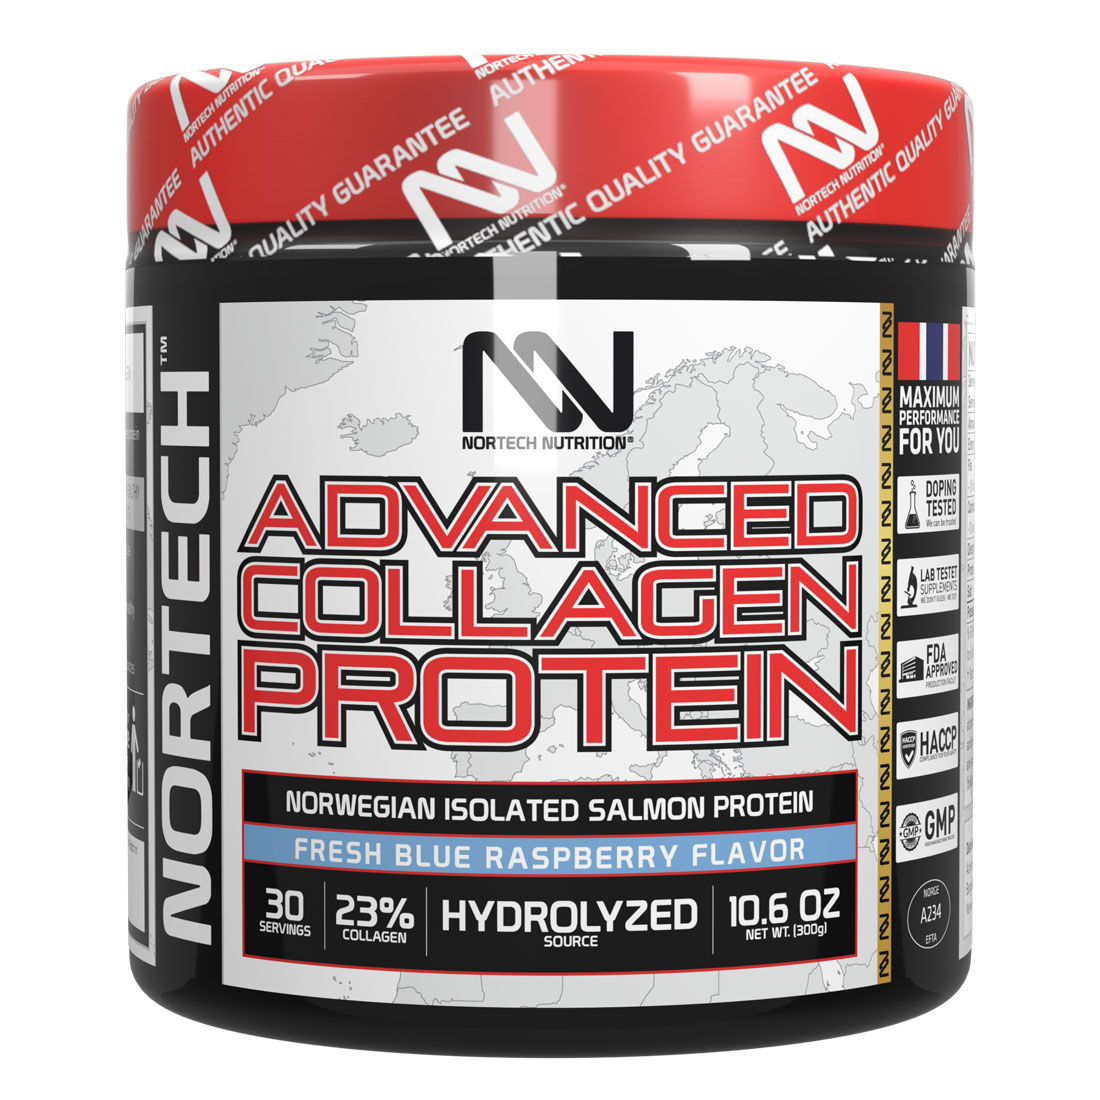 Nortech Advanced collagen protein 300g